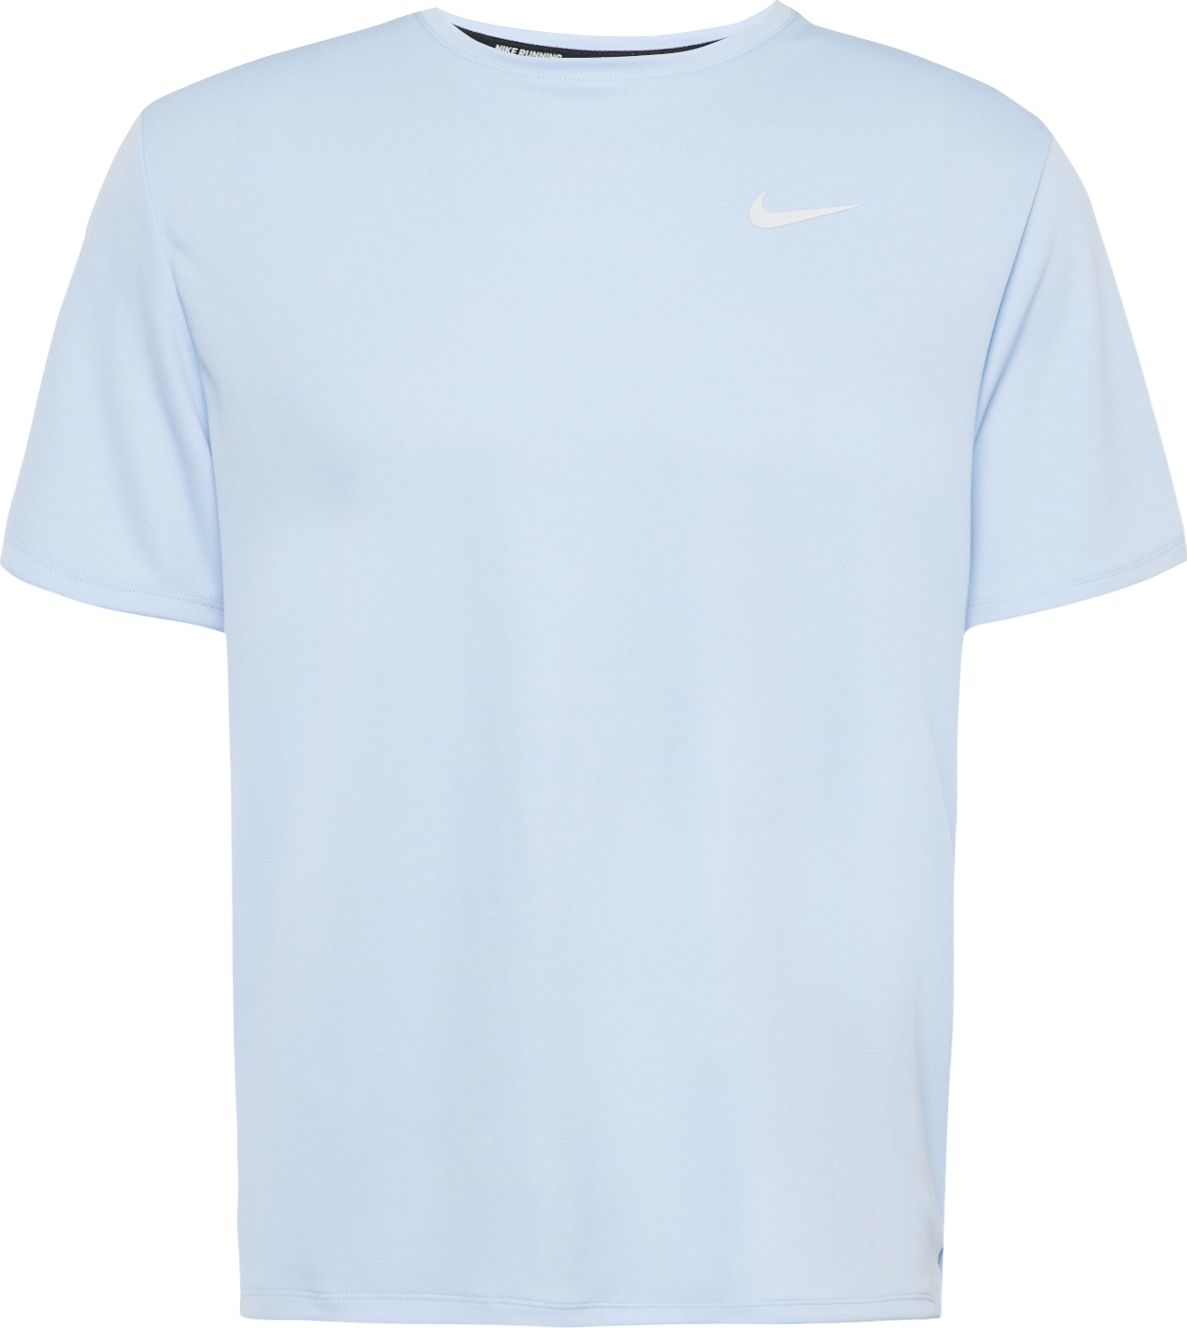 Funkční tričko Nike světlemodrá / stříbrná